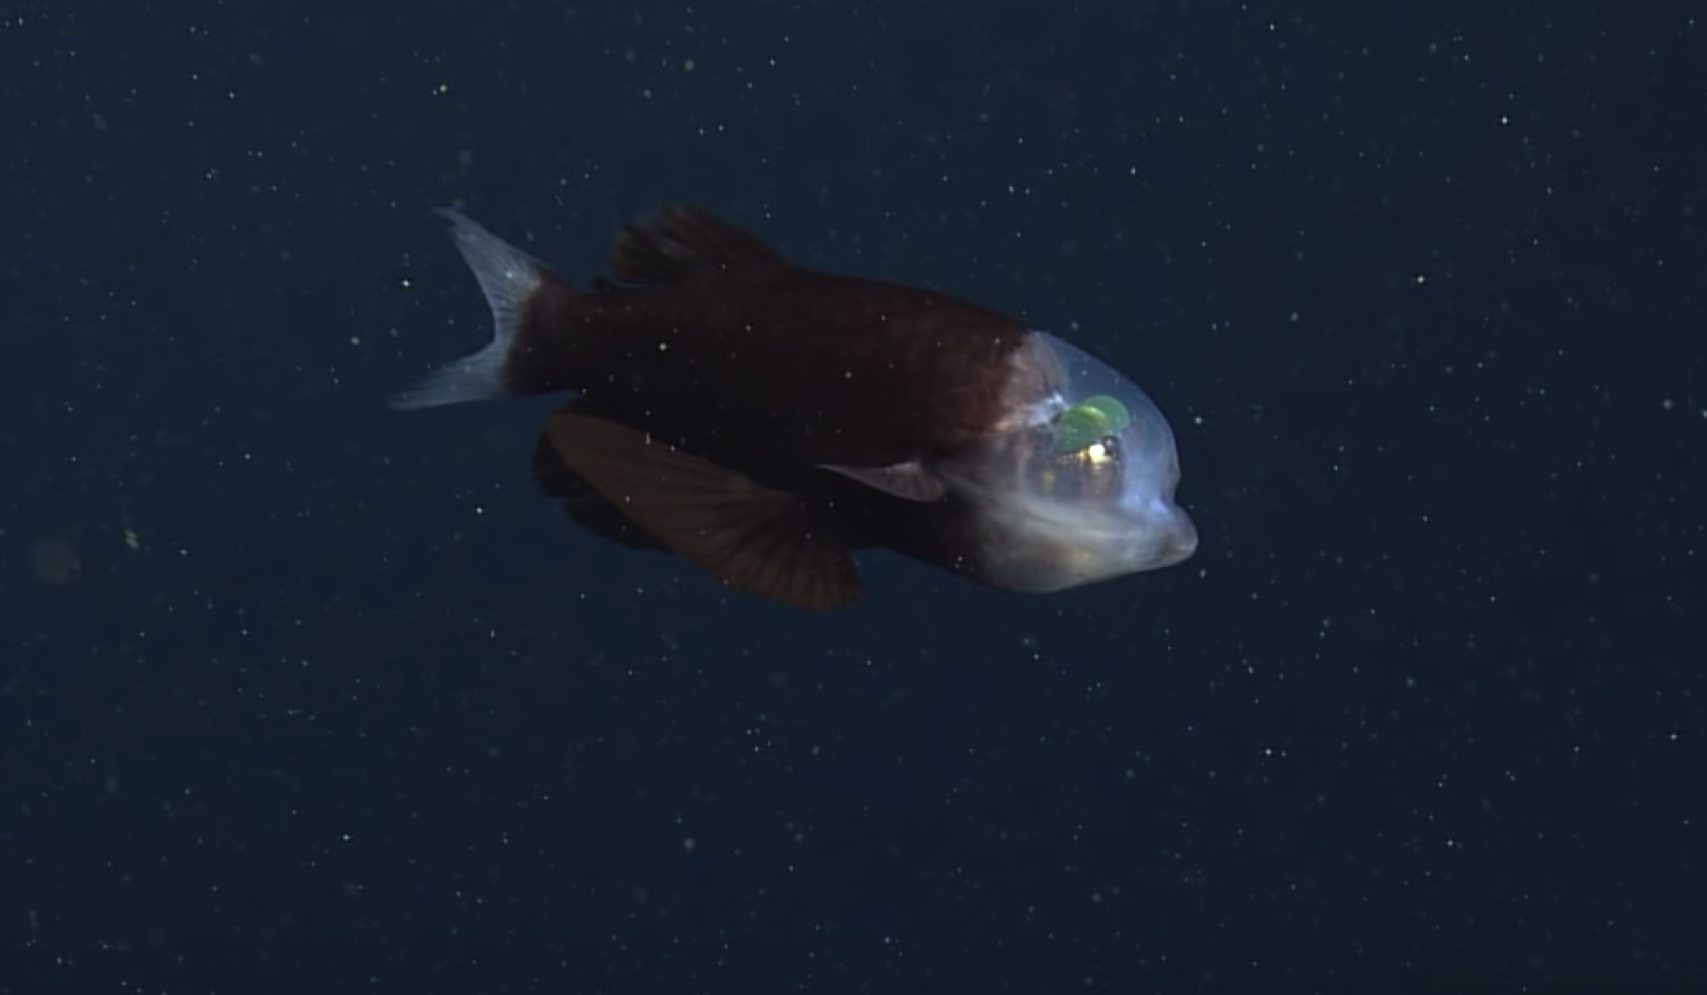 Disangka Makhluk Asing, Ikan Pelik Berkepala Lutsinar Bercahaya Ditemui Di Kedalaman Laut Kira-kira 609 Meter